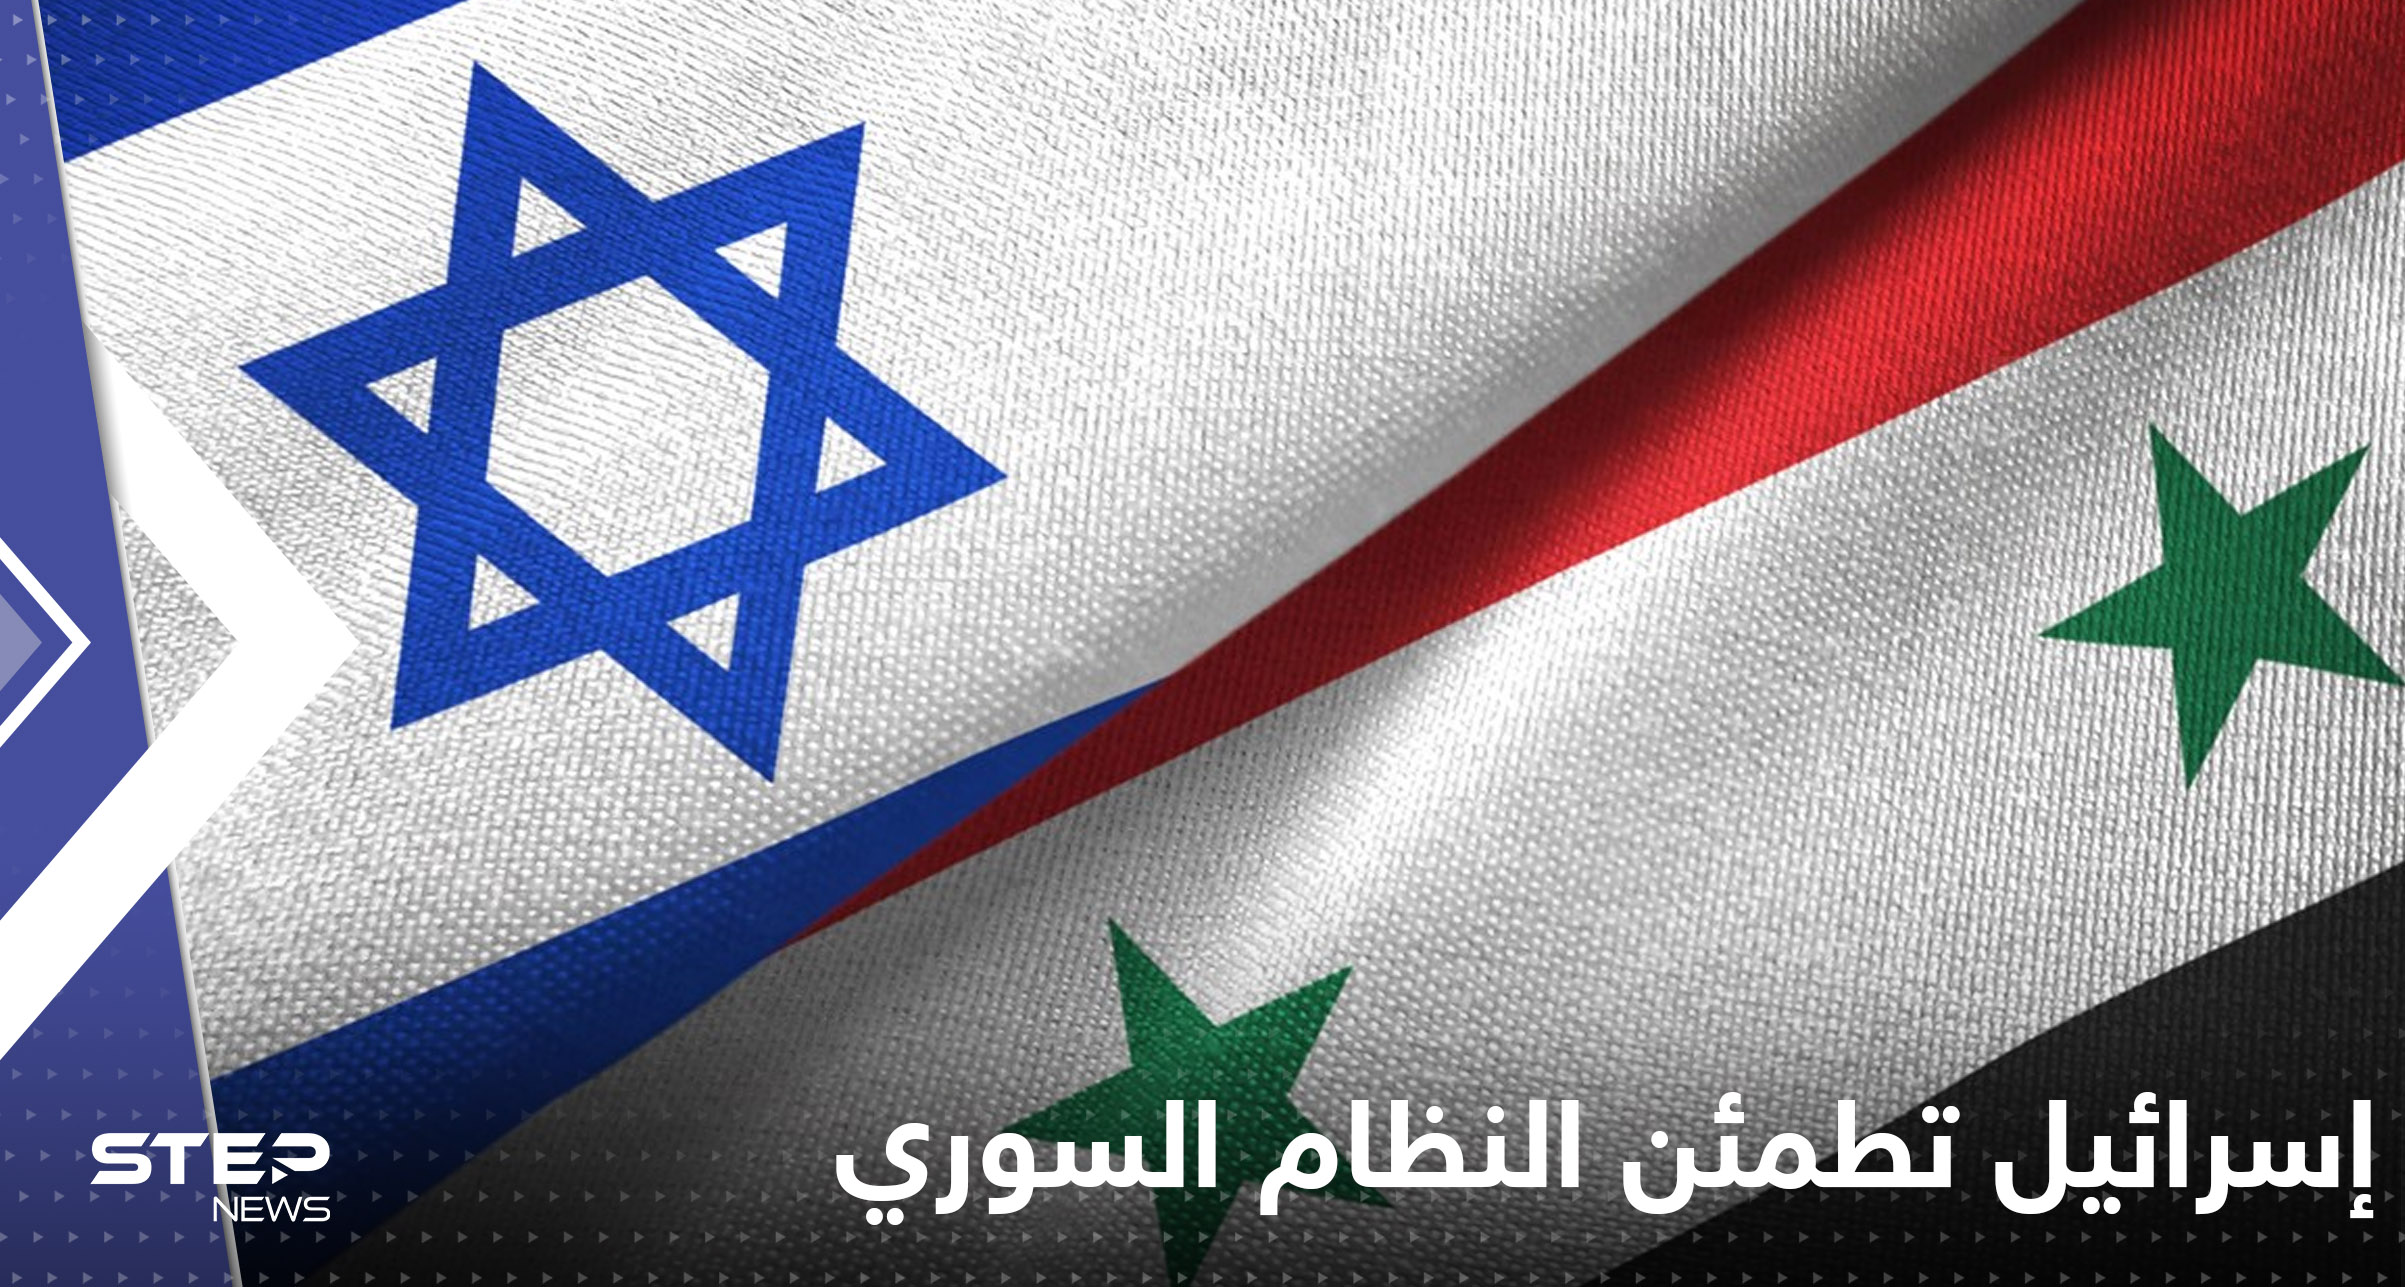 بعد قصف مطاري حلب ودمشق.. صحيفة عبرية تكشف هناك اتصالات بين النظام السوري واسرائيل